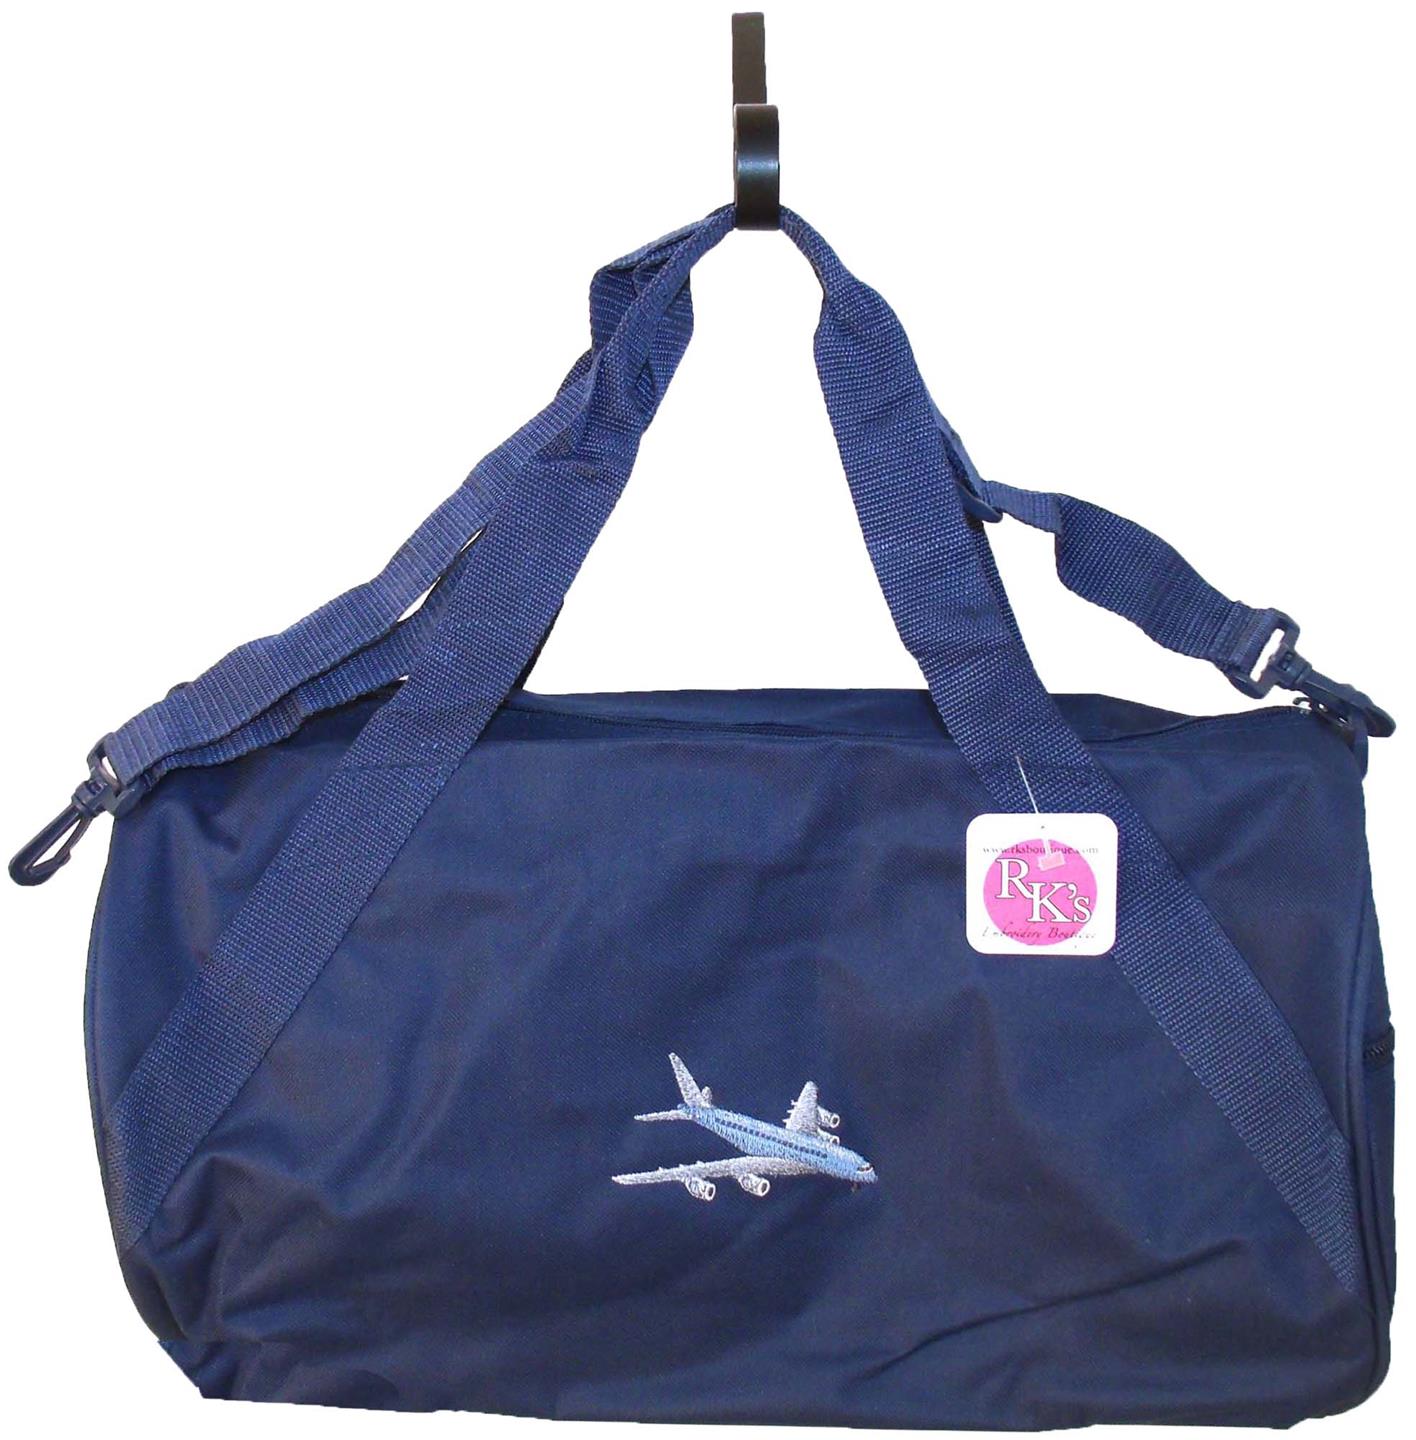 Soaring Commercial Airplane Duffle Gym Bag Travel Duffel Plane Custom Monogram | eBay